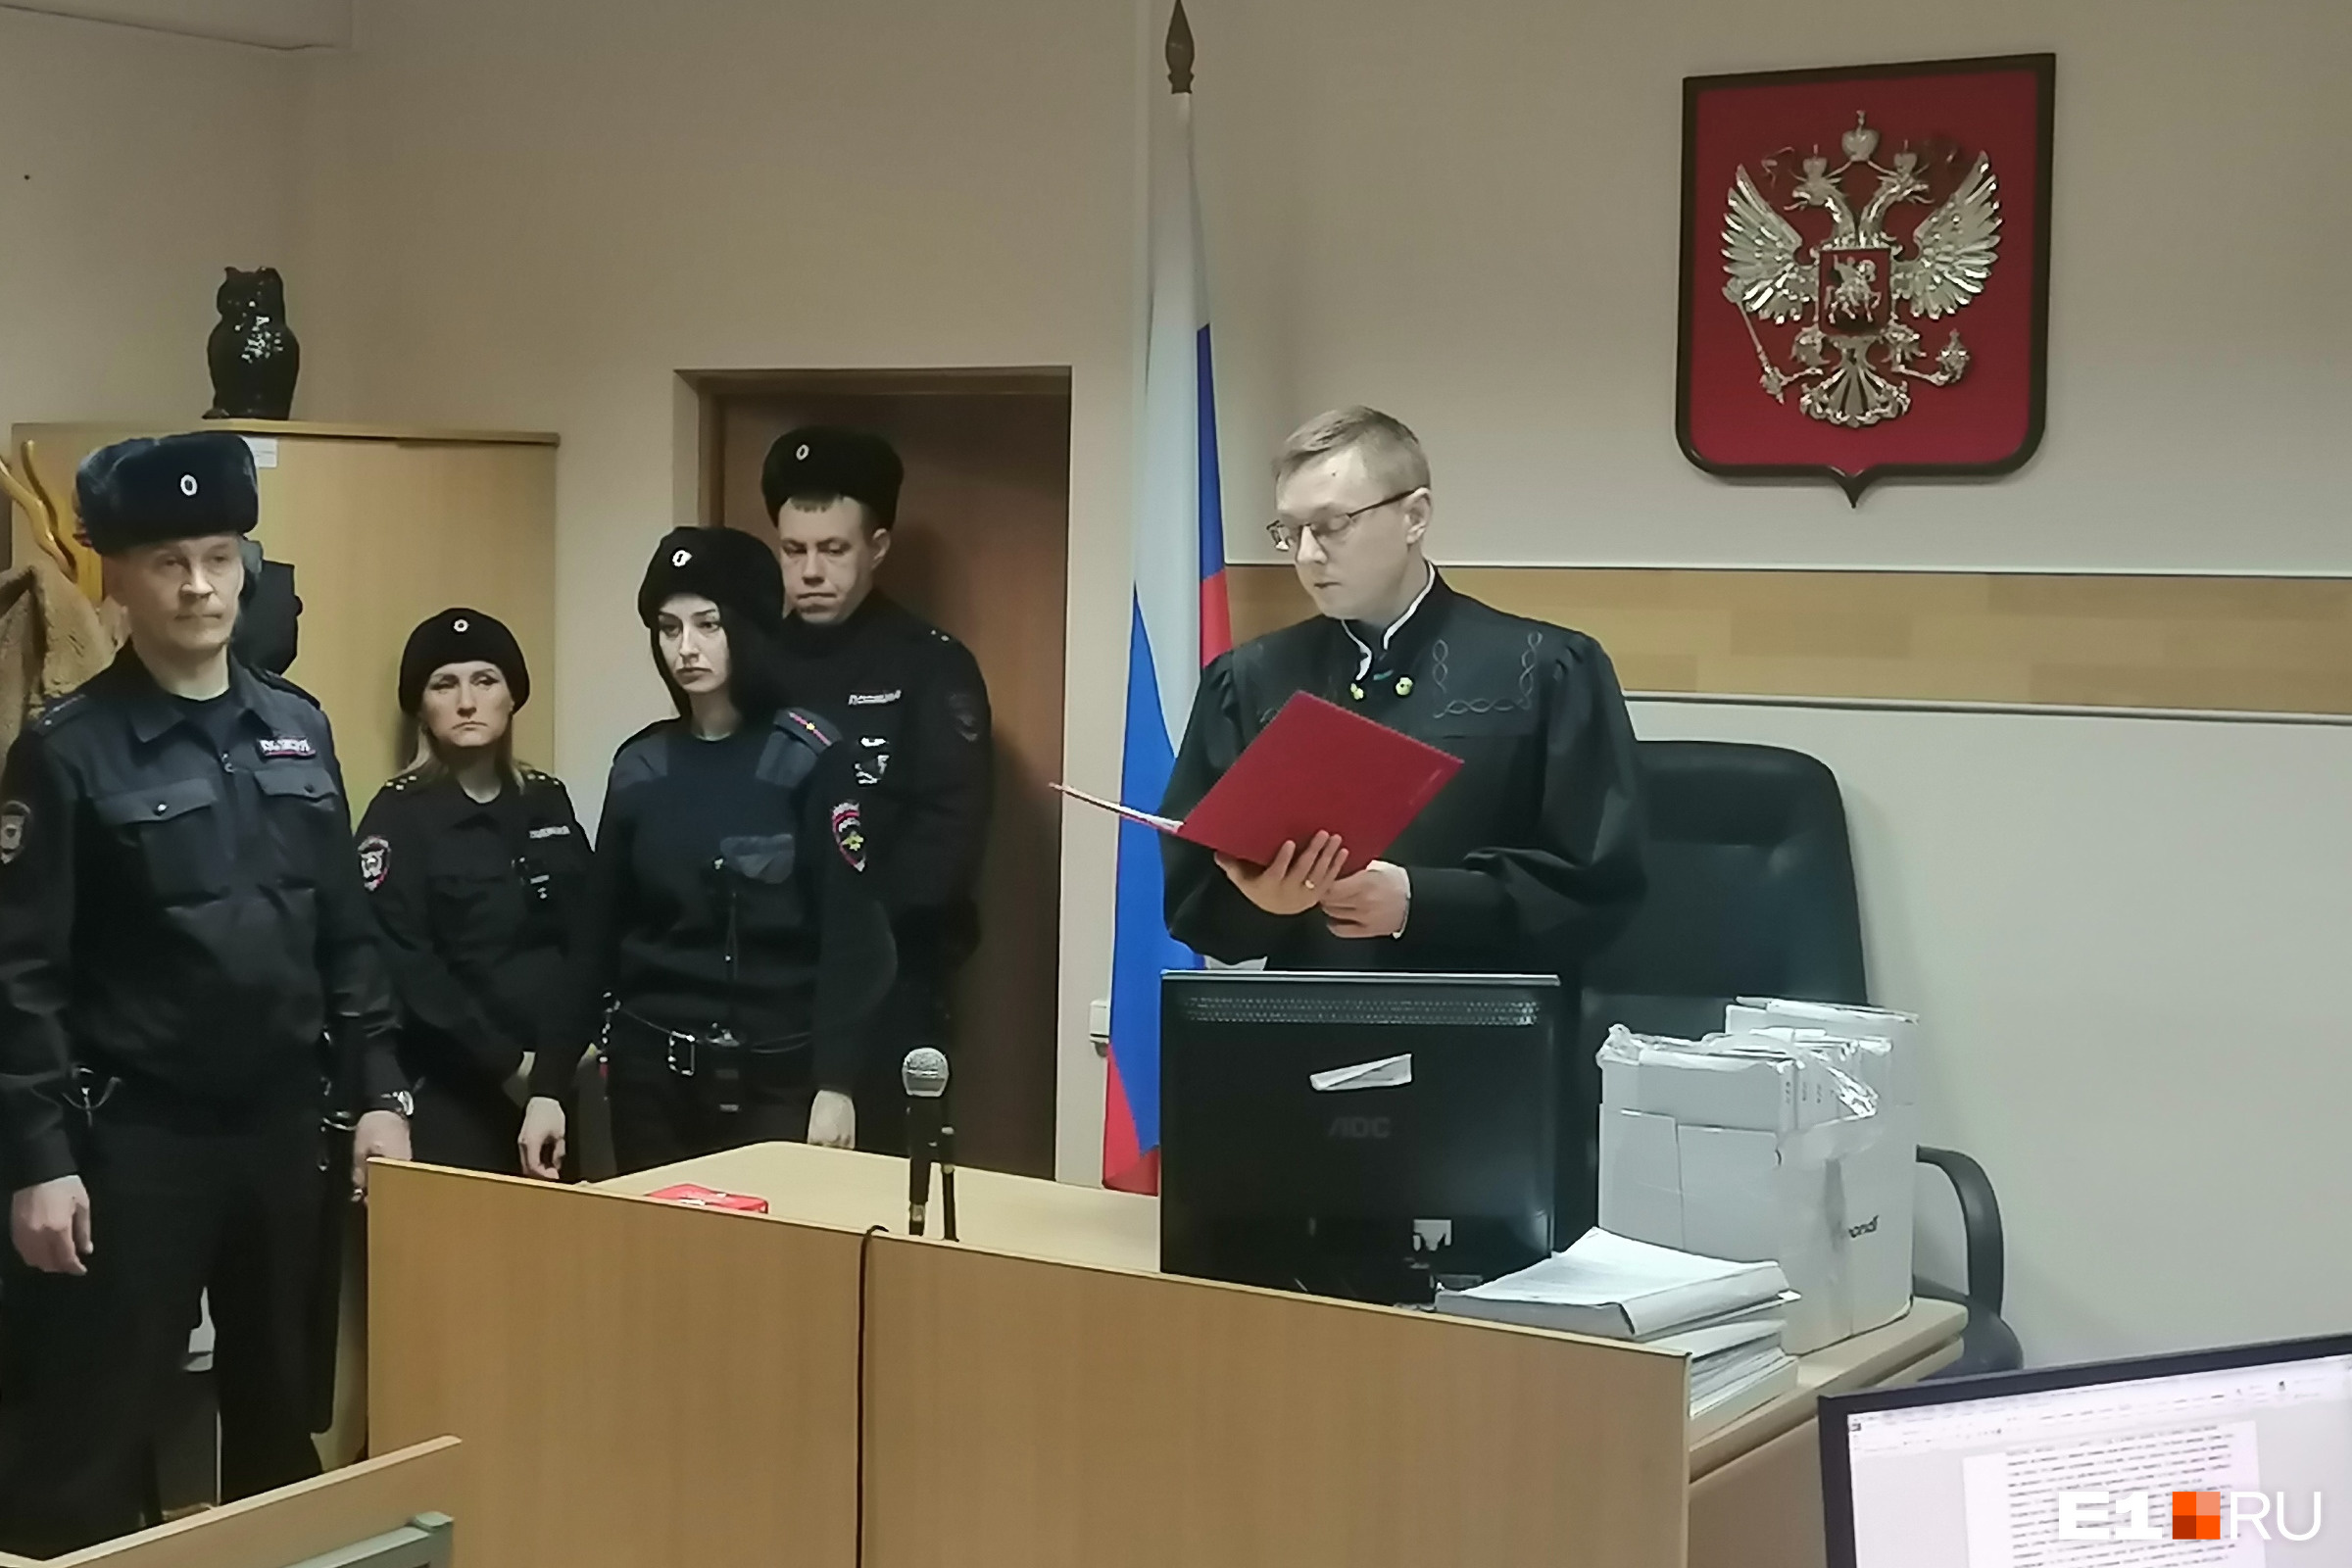 Судья Игорь Шенаурин вынес суровый приговор 